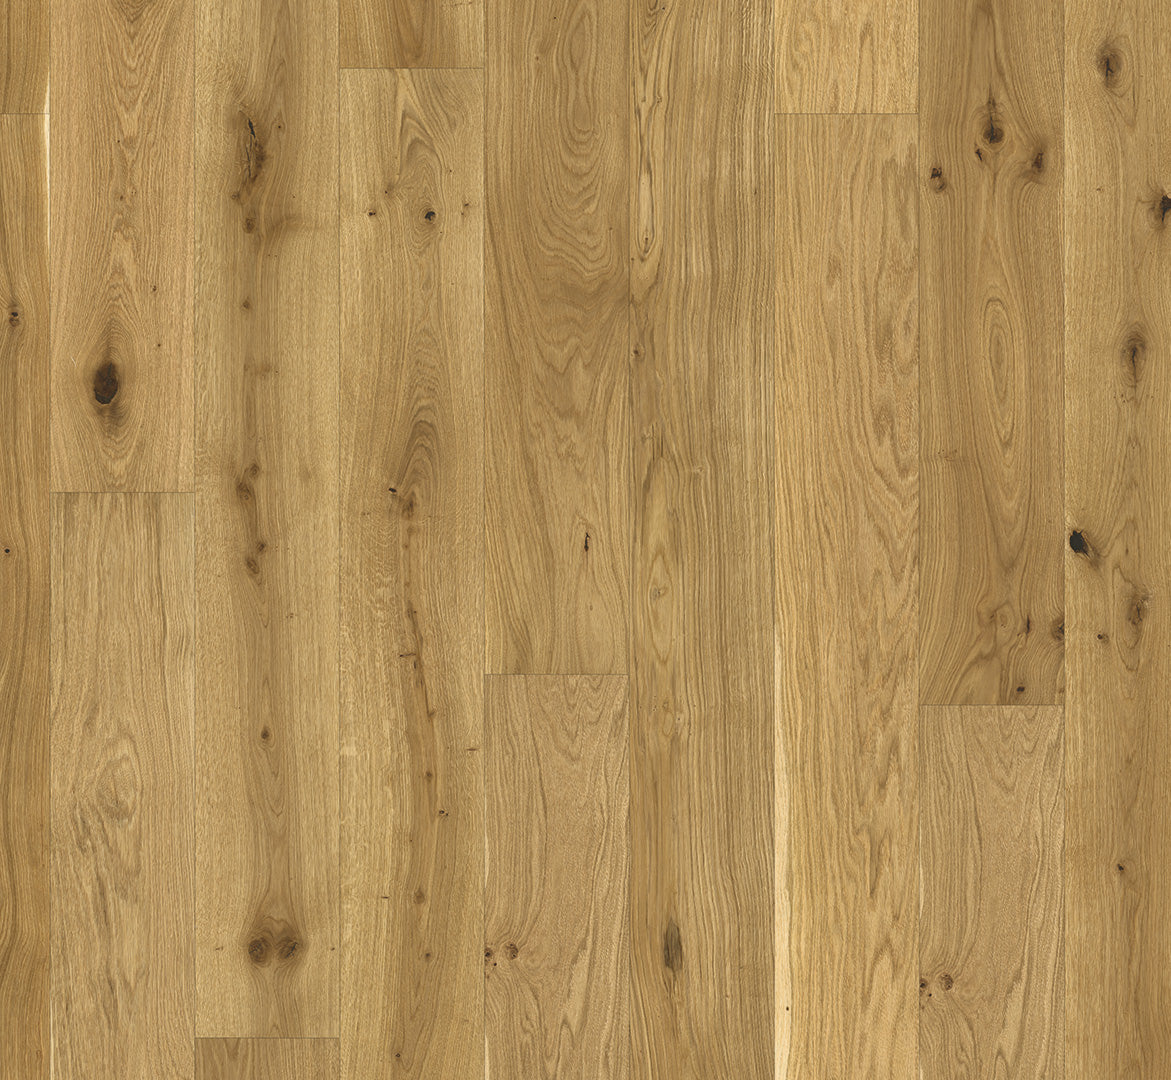 Oak Brushed Basic 11-5 Wide plank Natural Oil (2200 x 185 x 11.5 mm)